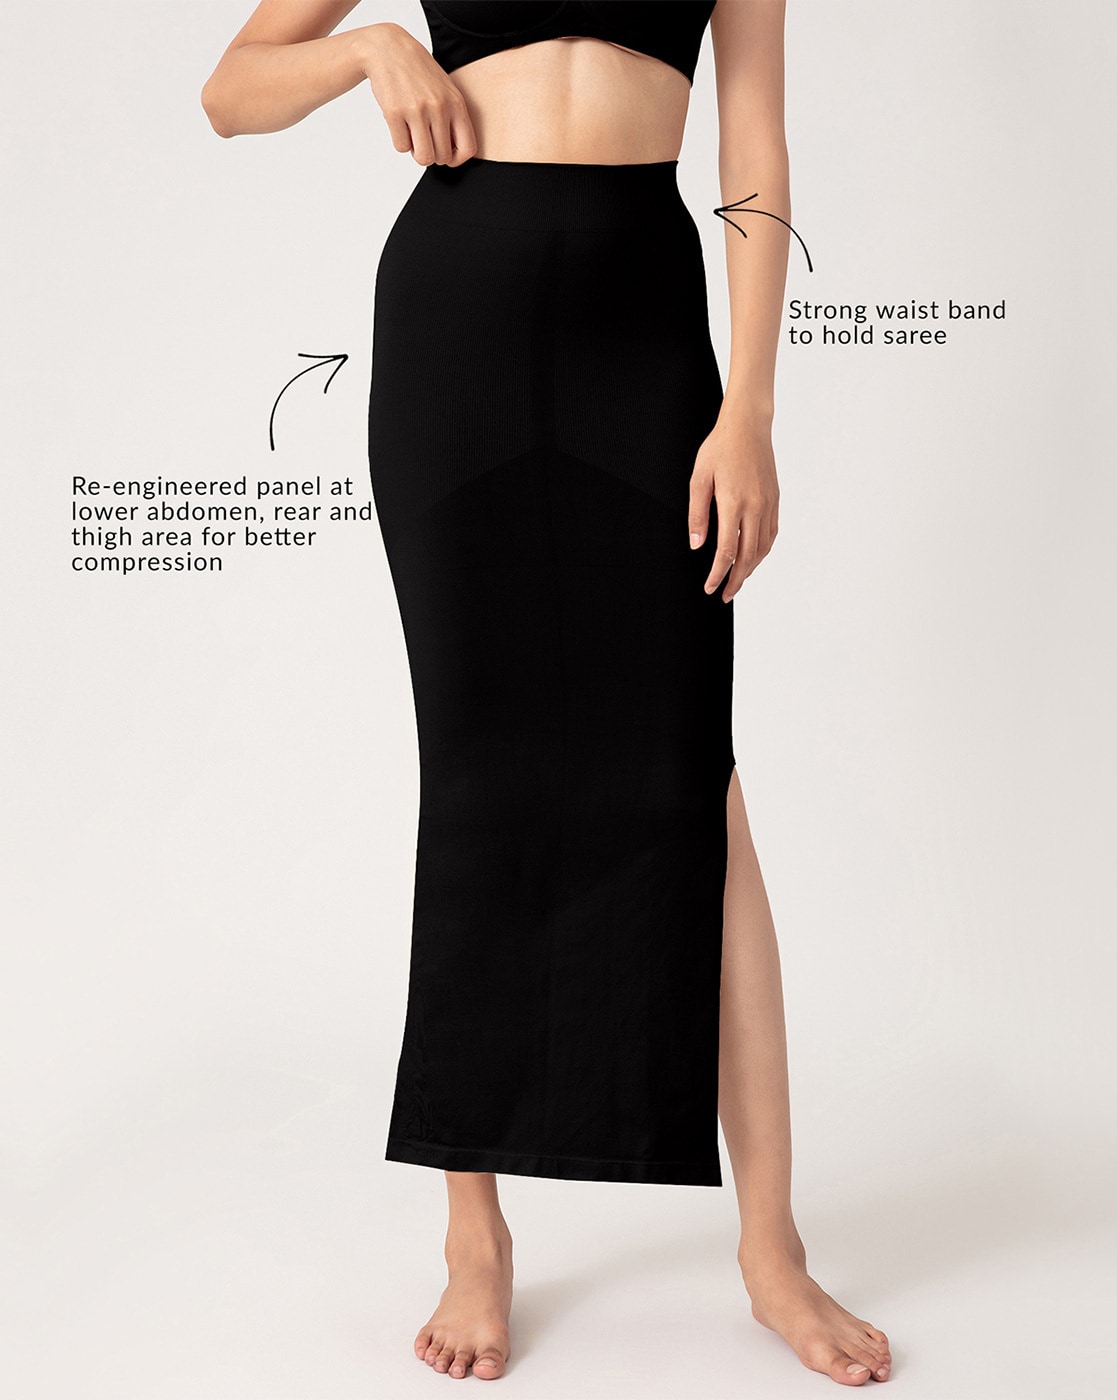 Buy Black Shapewear for Women by Nykd Online